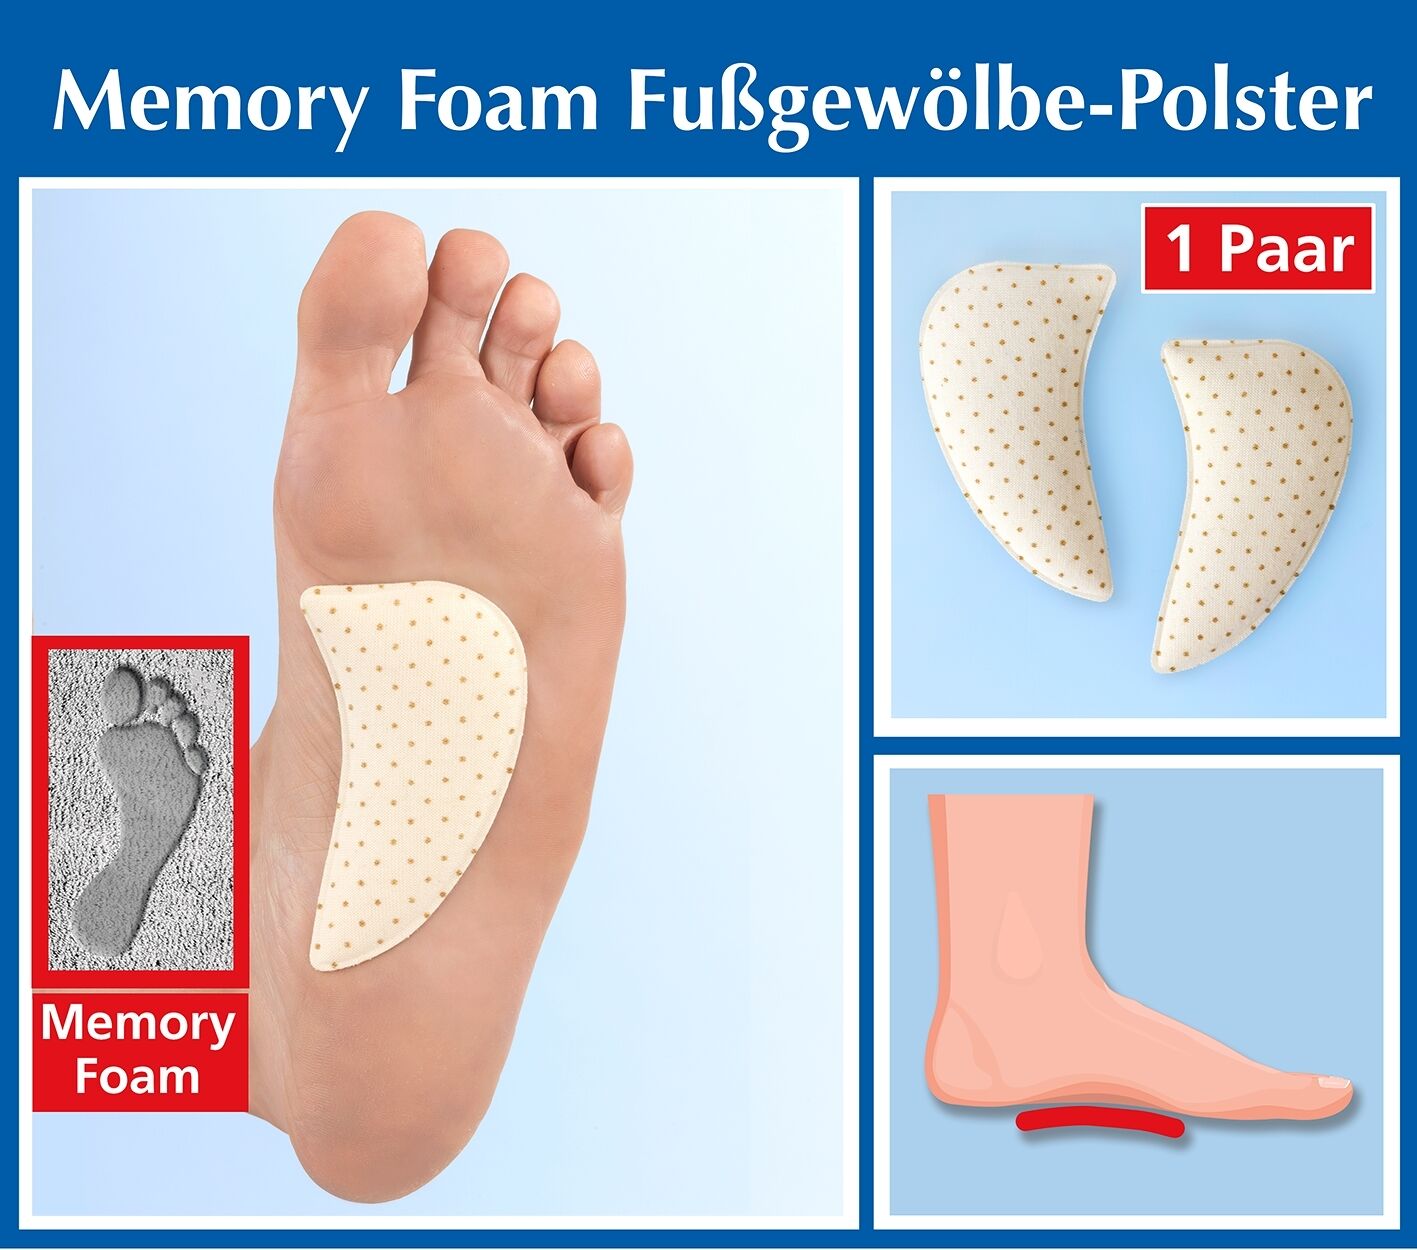 Memory Foam Fußgewölbe-Polster, 1 Paar